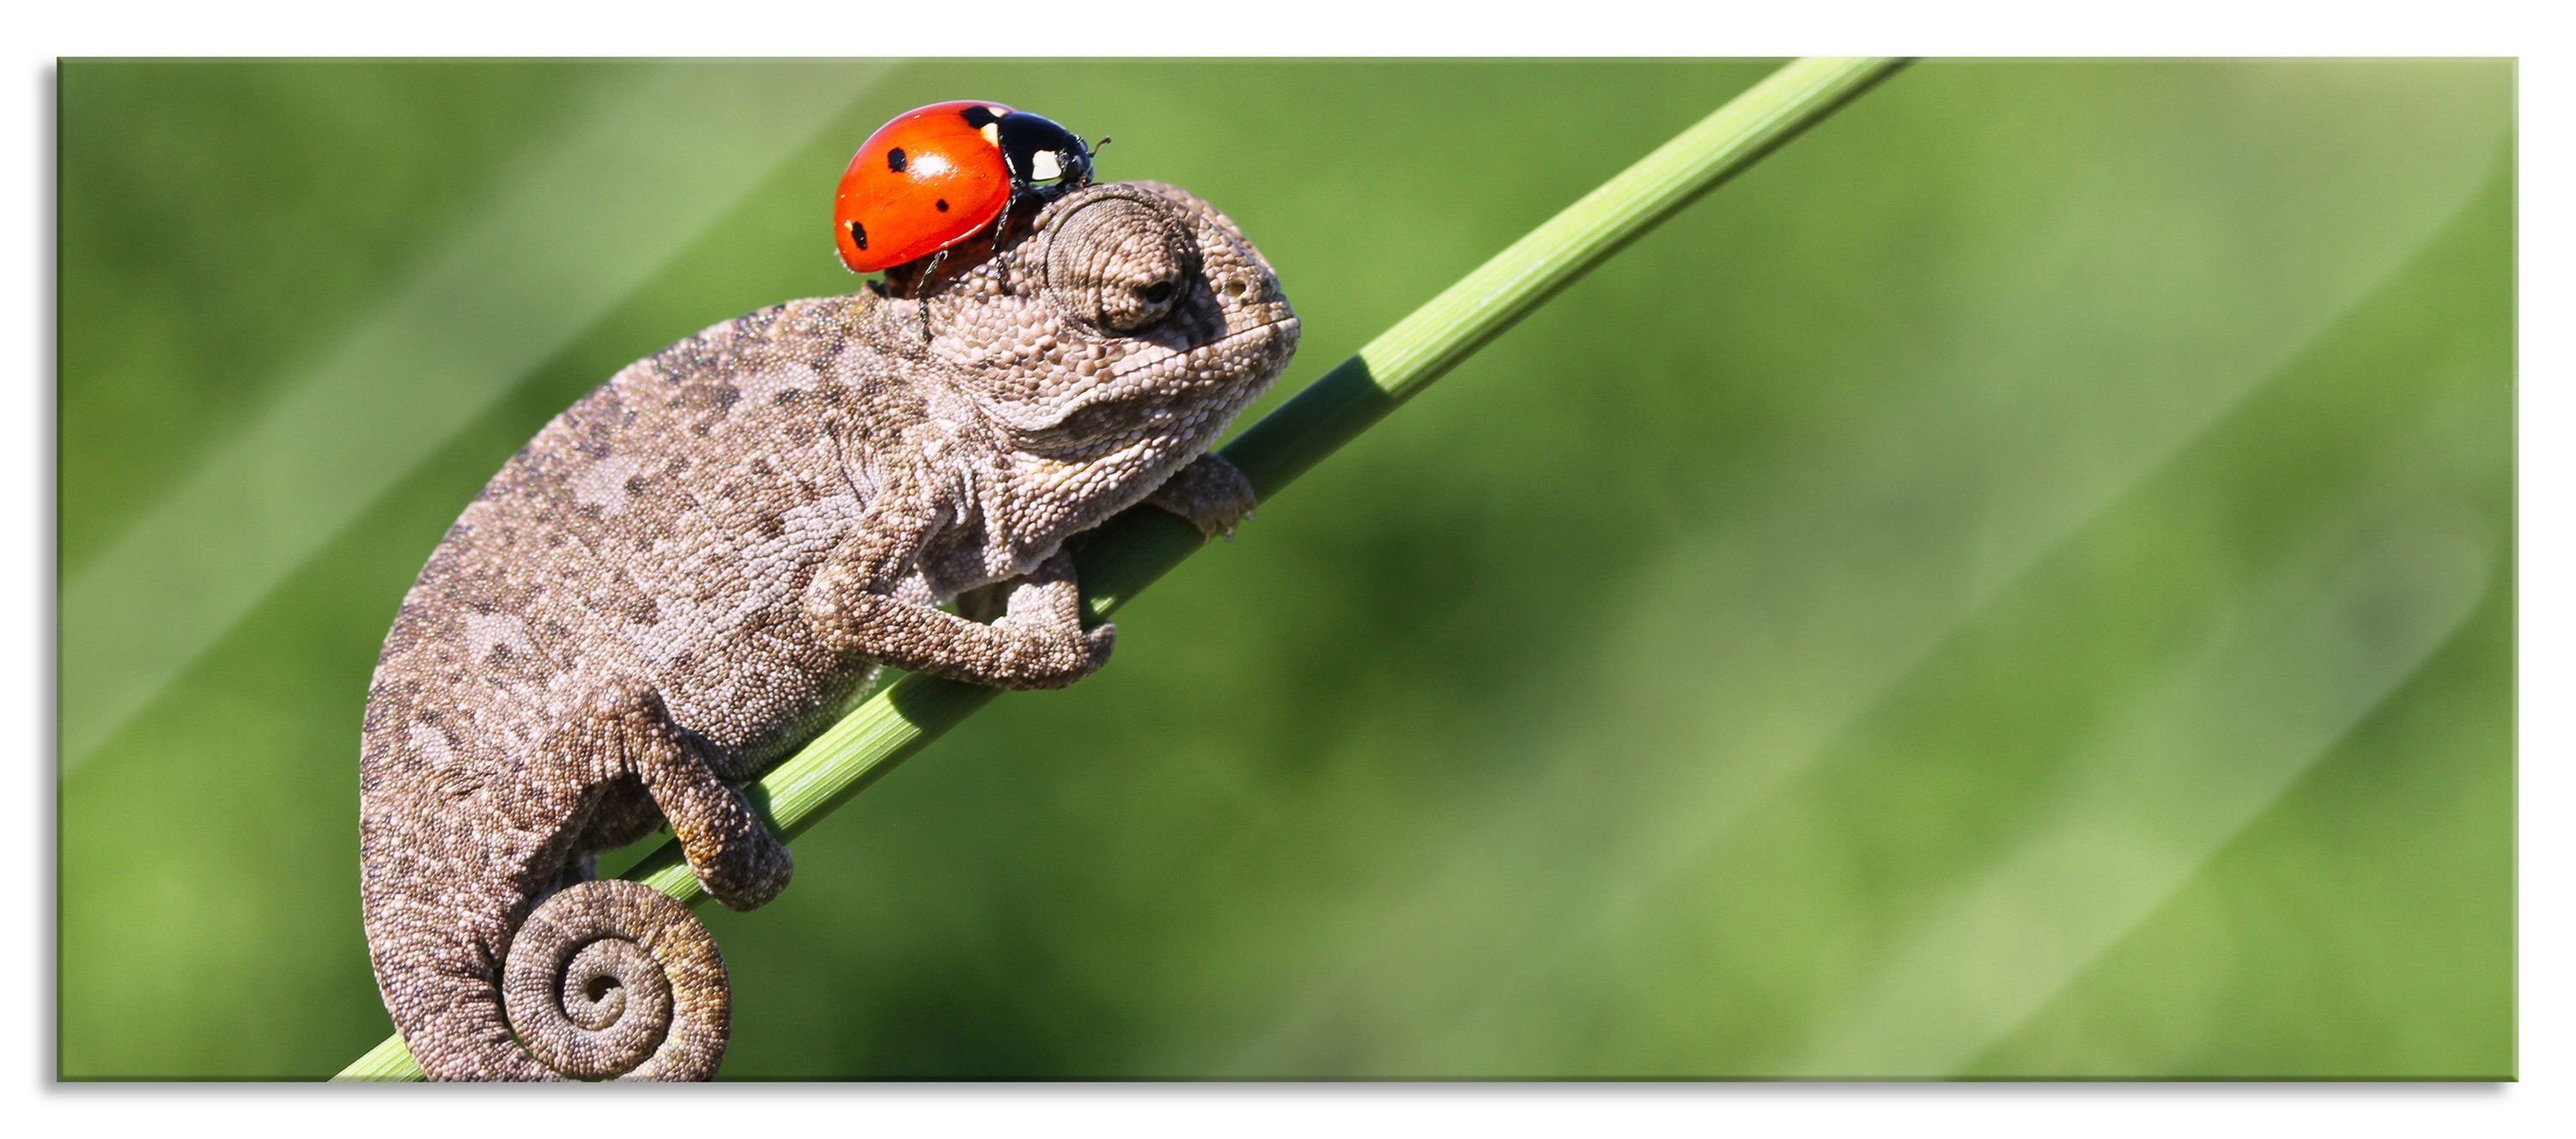 Pixxprint Glasbild Süßer Gecko mit einem Marienkäfer, Süßer Gecko mit einem Marienkäfer (1 St), Glasbild aus Echtglas, inkl. Aufhängungen und Abstandshalter